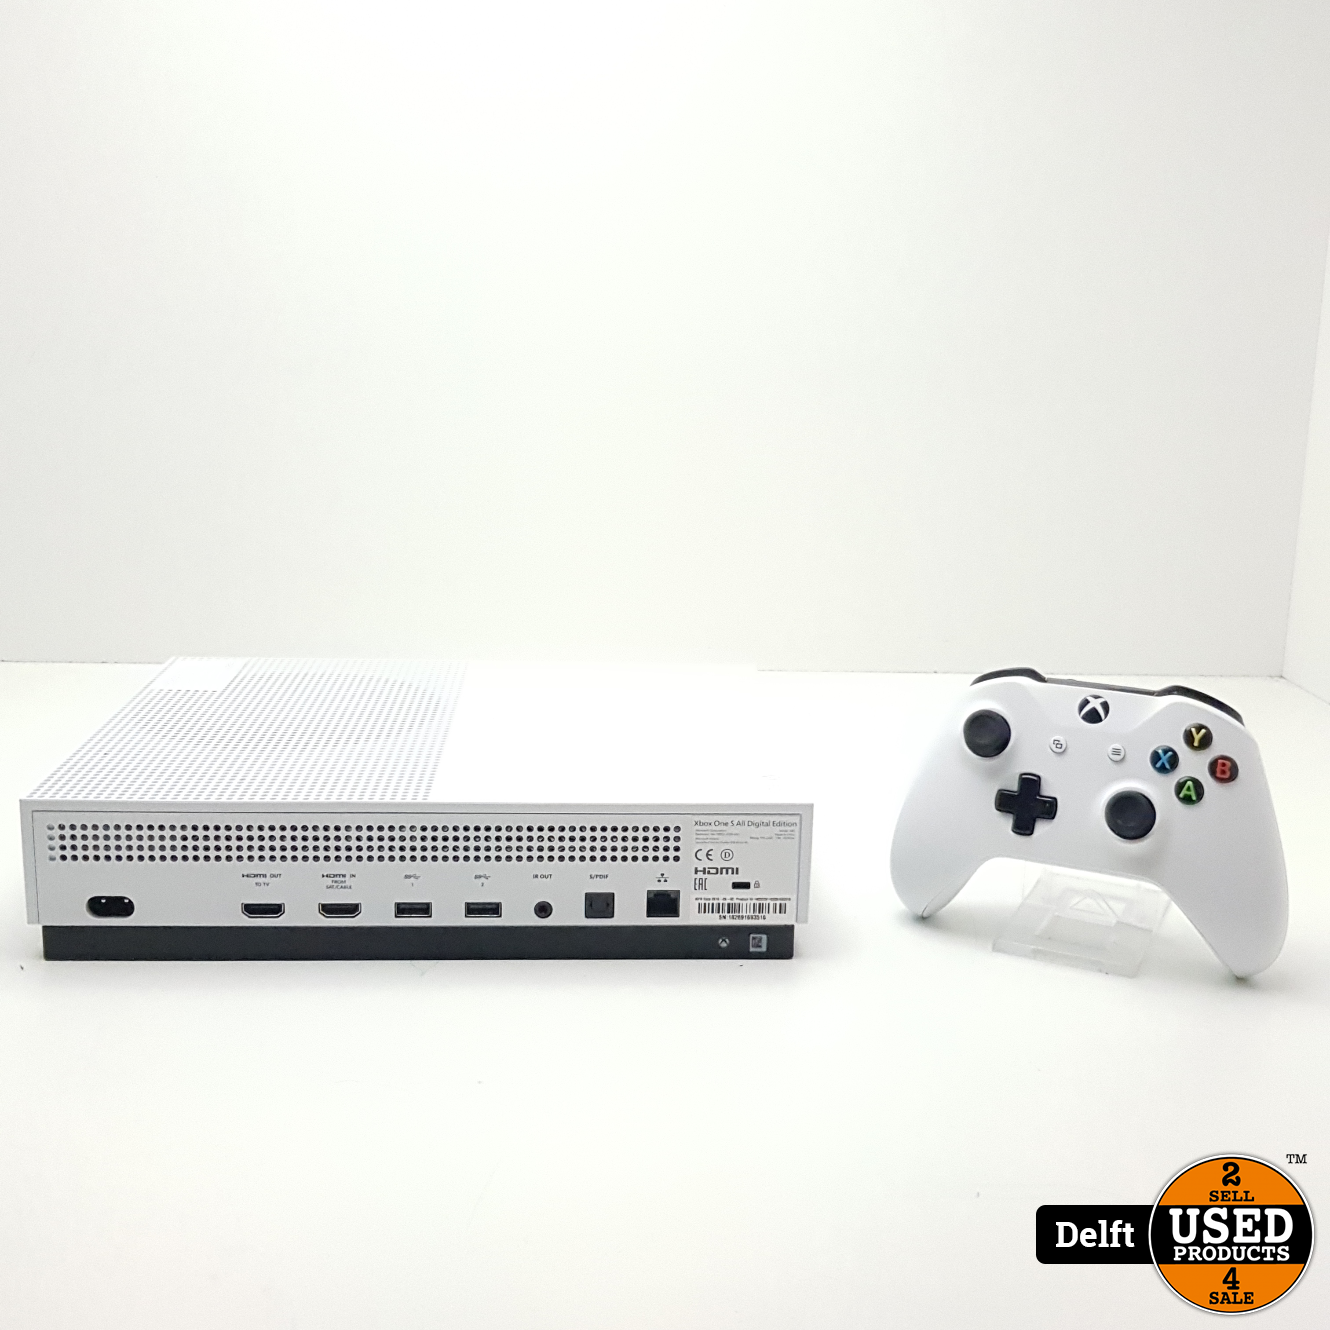 Bier hoog Niet verwacht Xbox One S all Digital incl controller en kabels garantie - Used Products  Delft